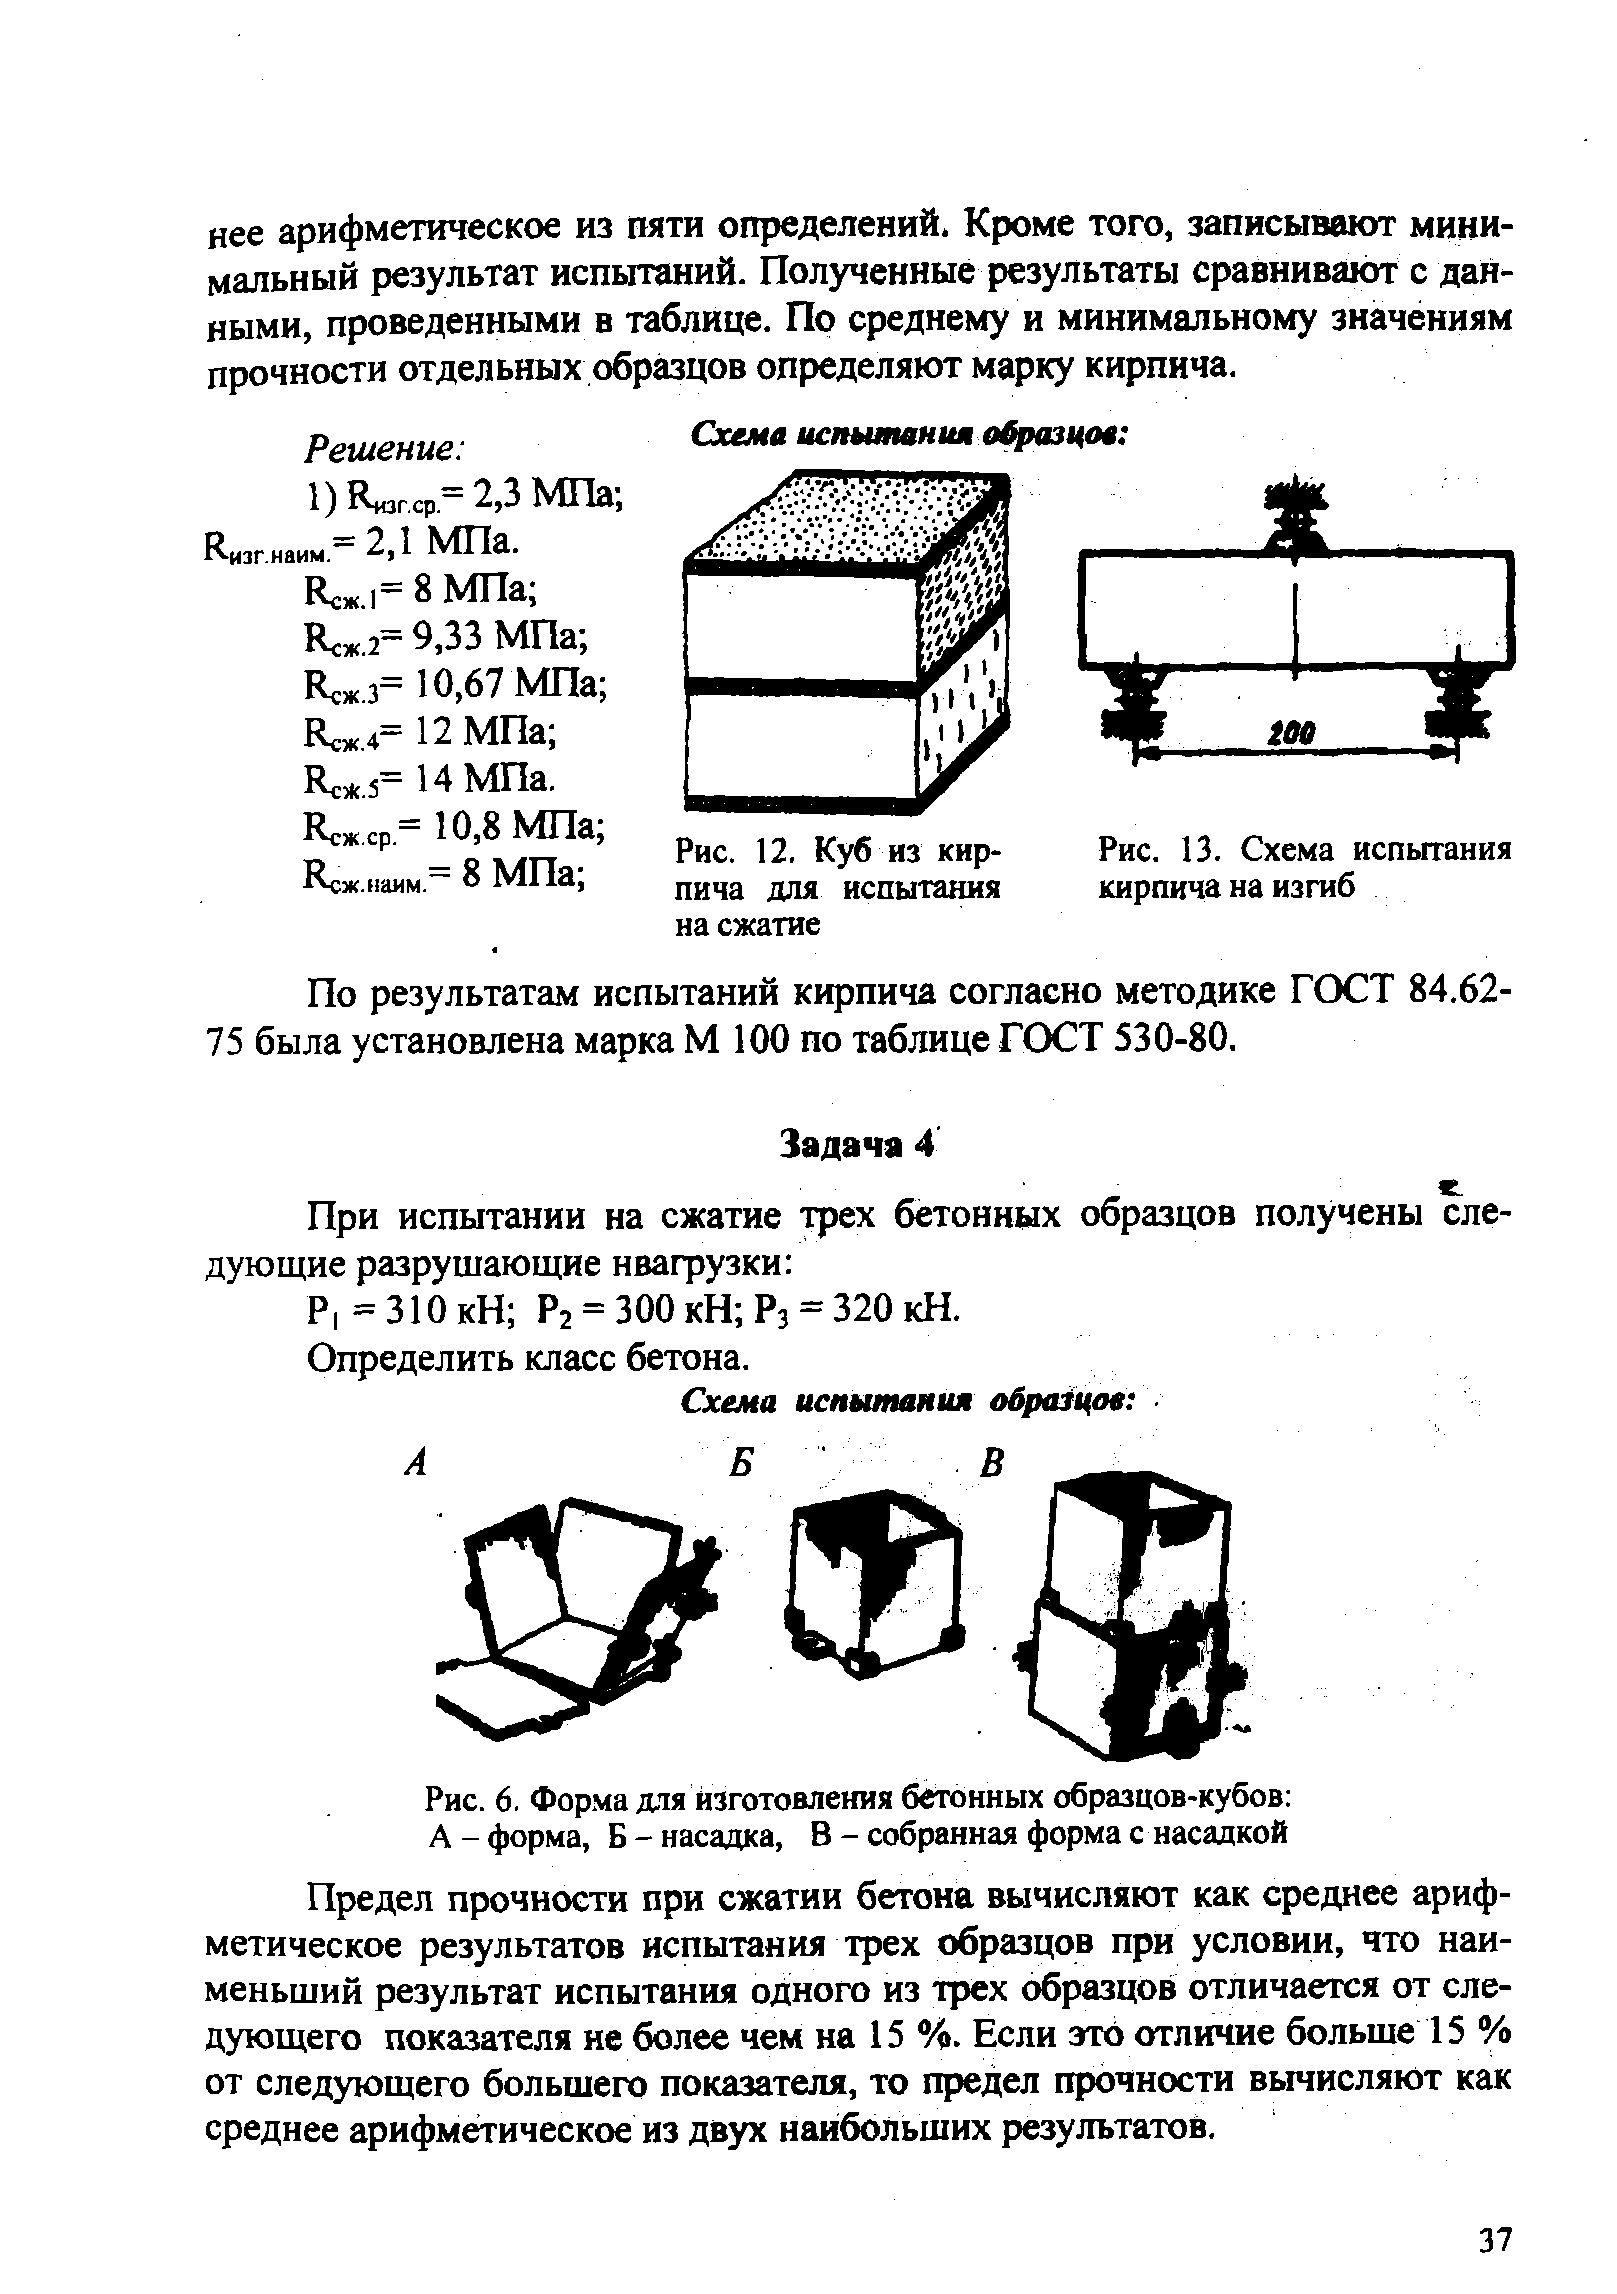 Рис. 12, Куб из кирпича для испытания на сжатие
